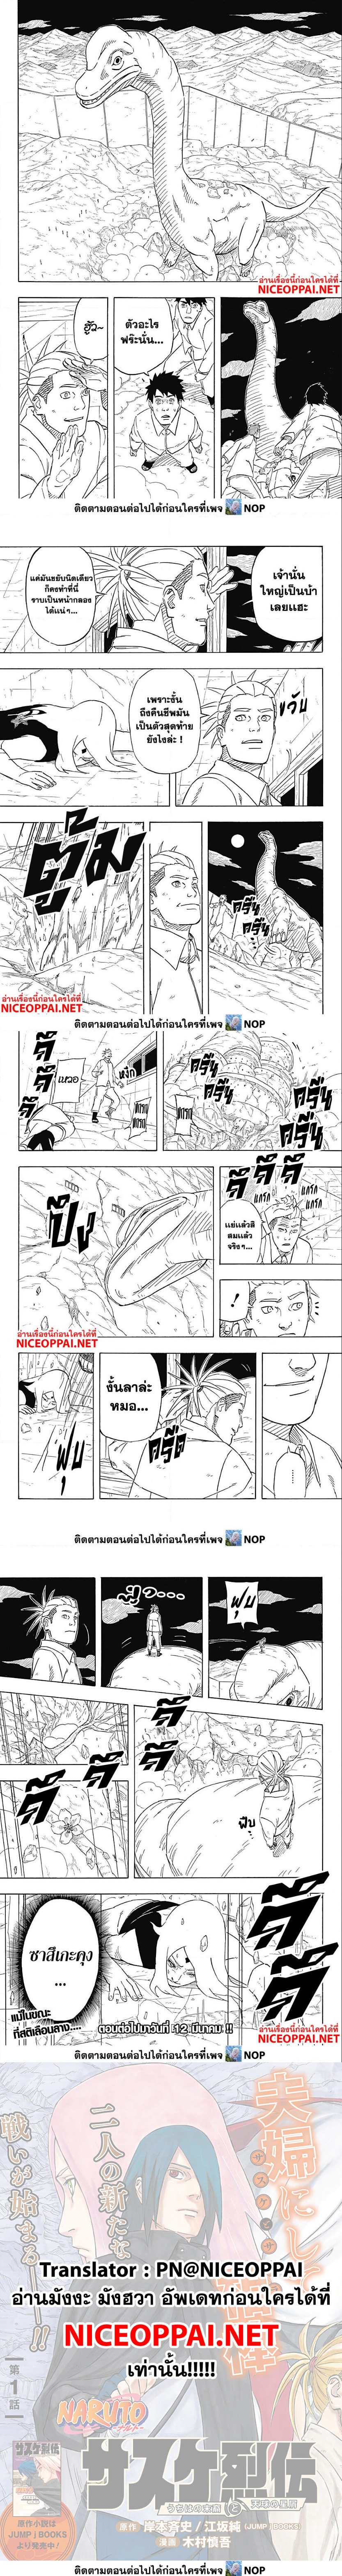 Naruto Sasuke’s Story 7.2 (5)